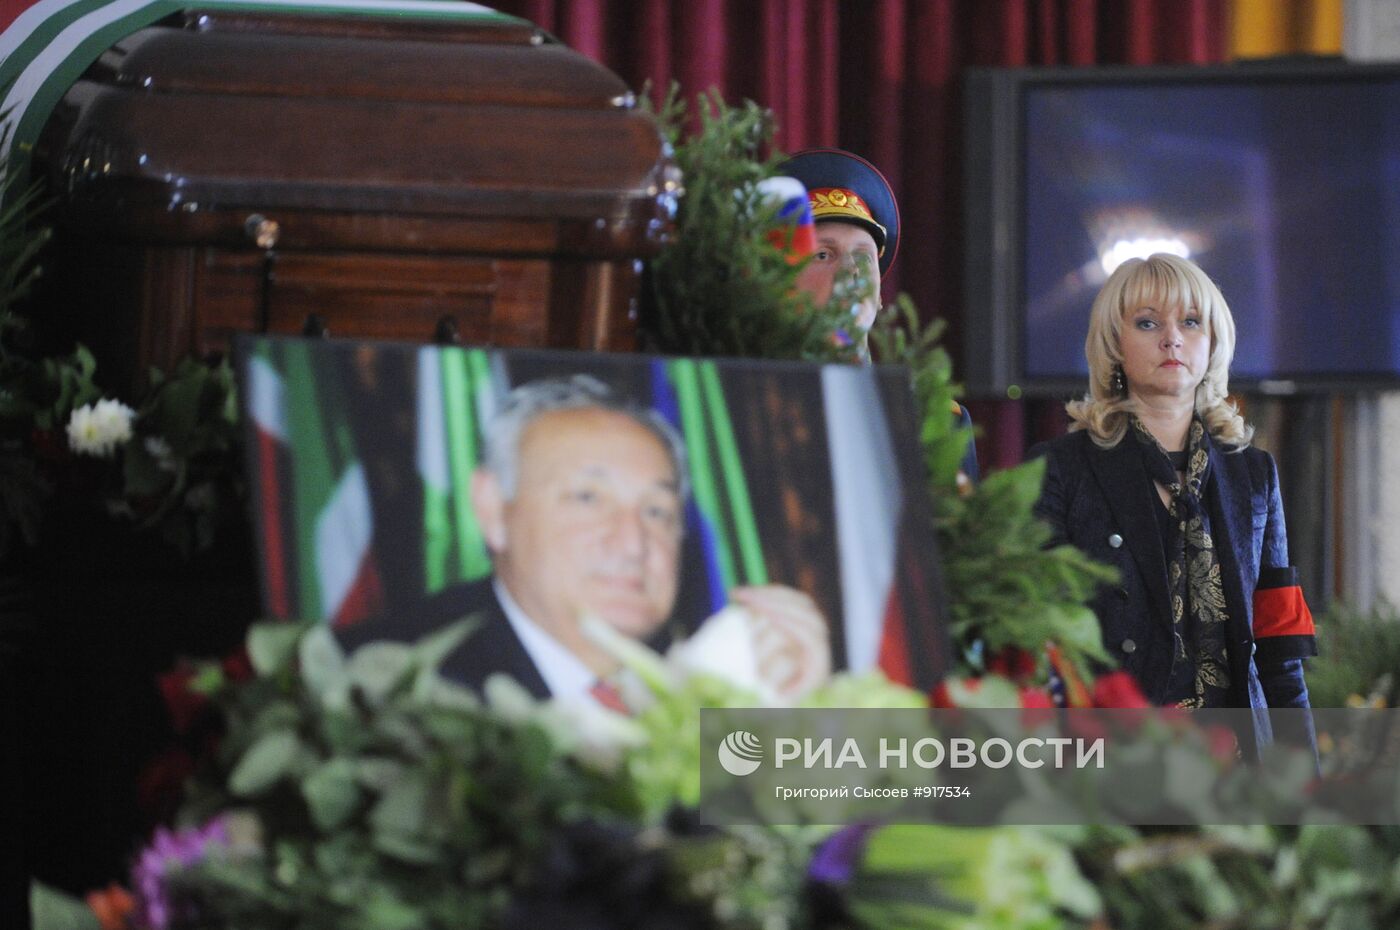 Прощание с президентом Абхазии Сергеем Багапшем